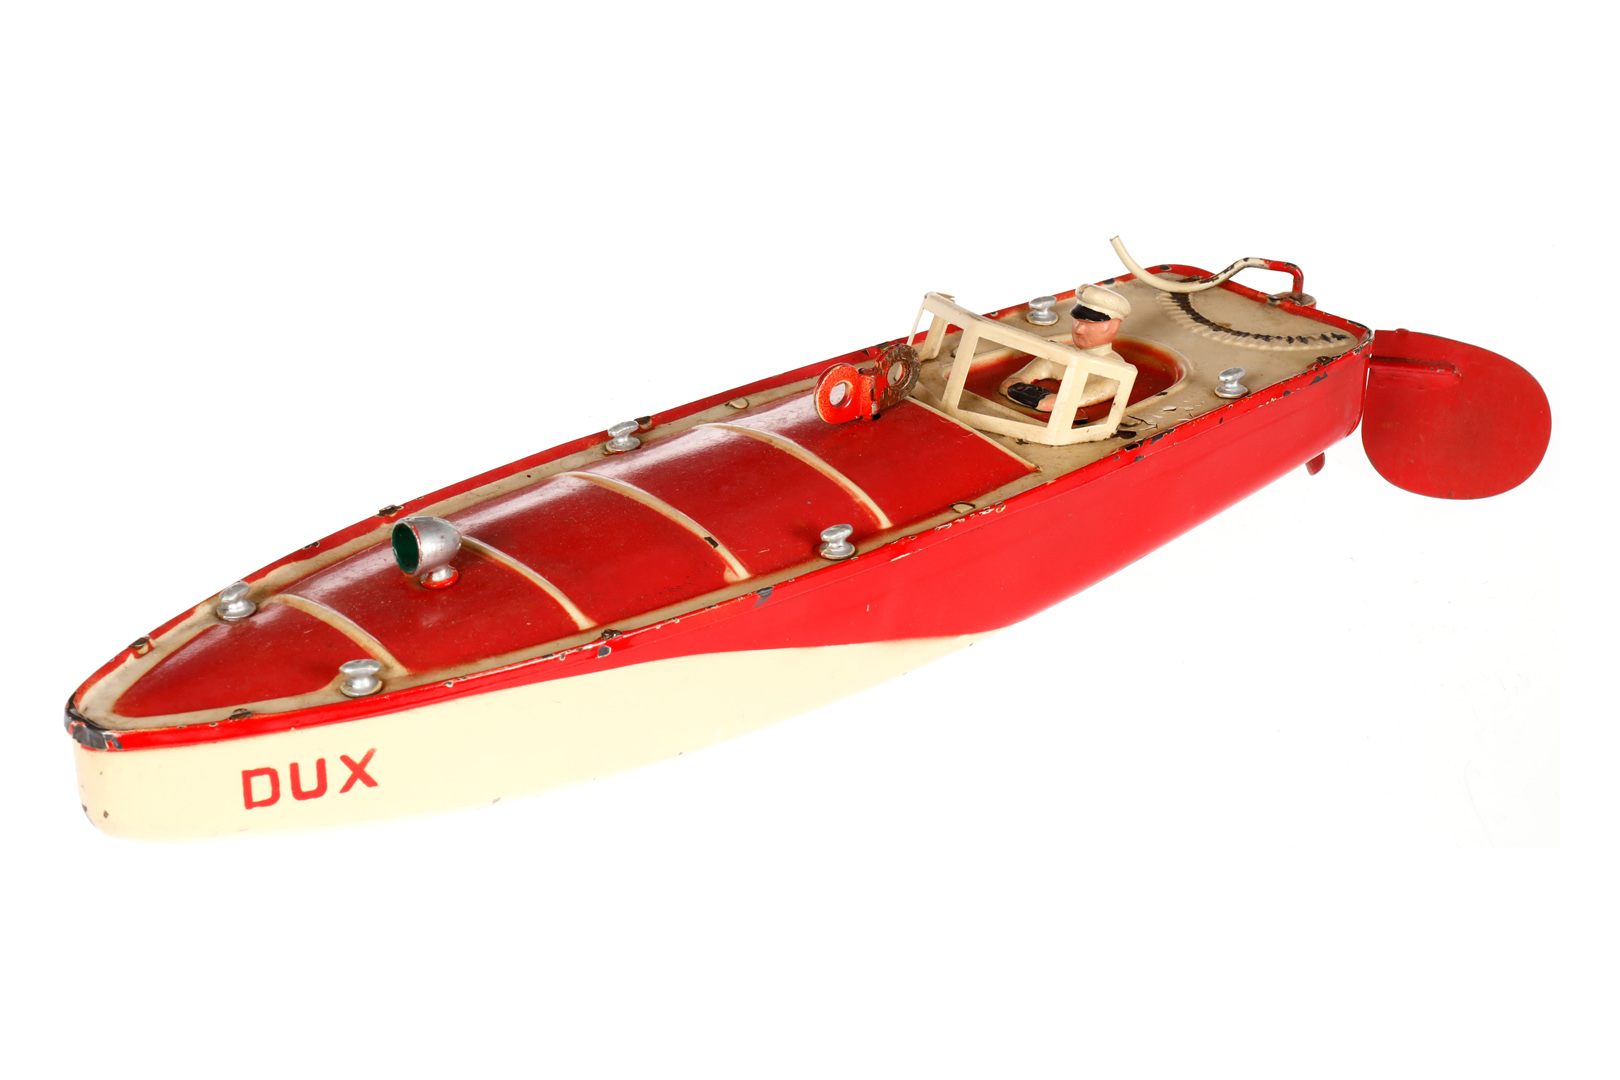 Dux Rennboot, HL, Uhrwerk intakt, mit Fahrerfigur, LS und Alterungsspuren, Gesamtlänge 42,5, Z 3